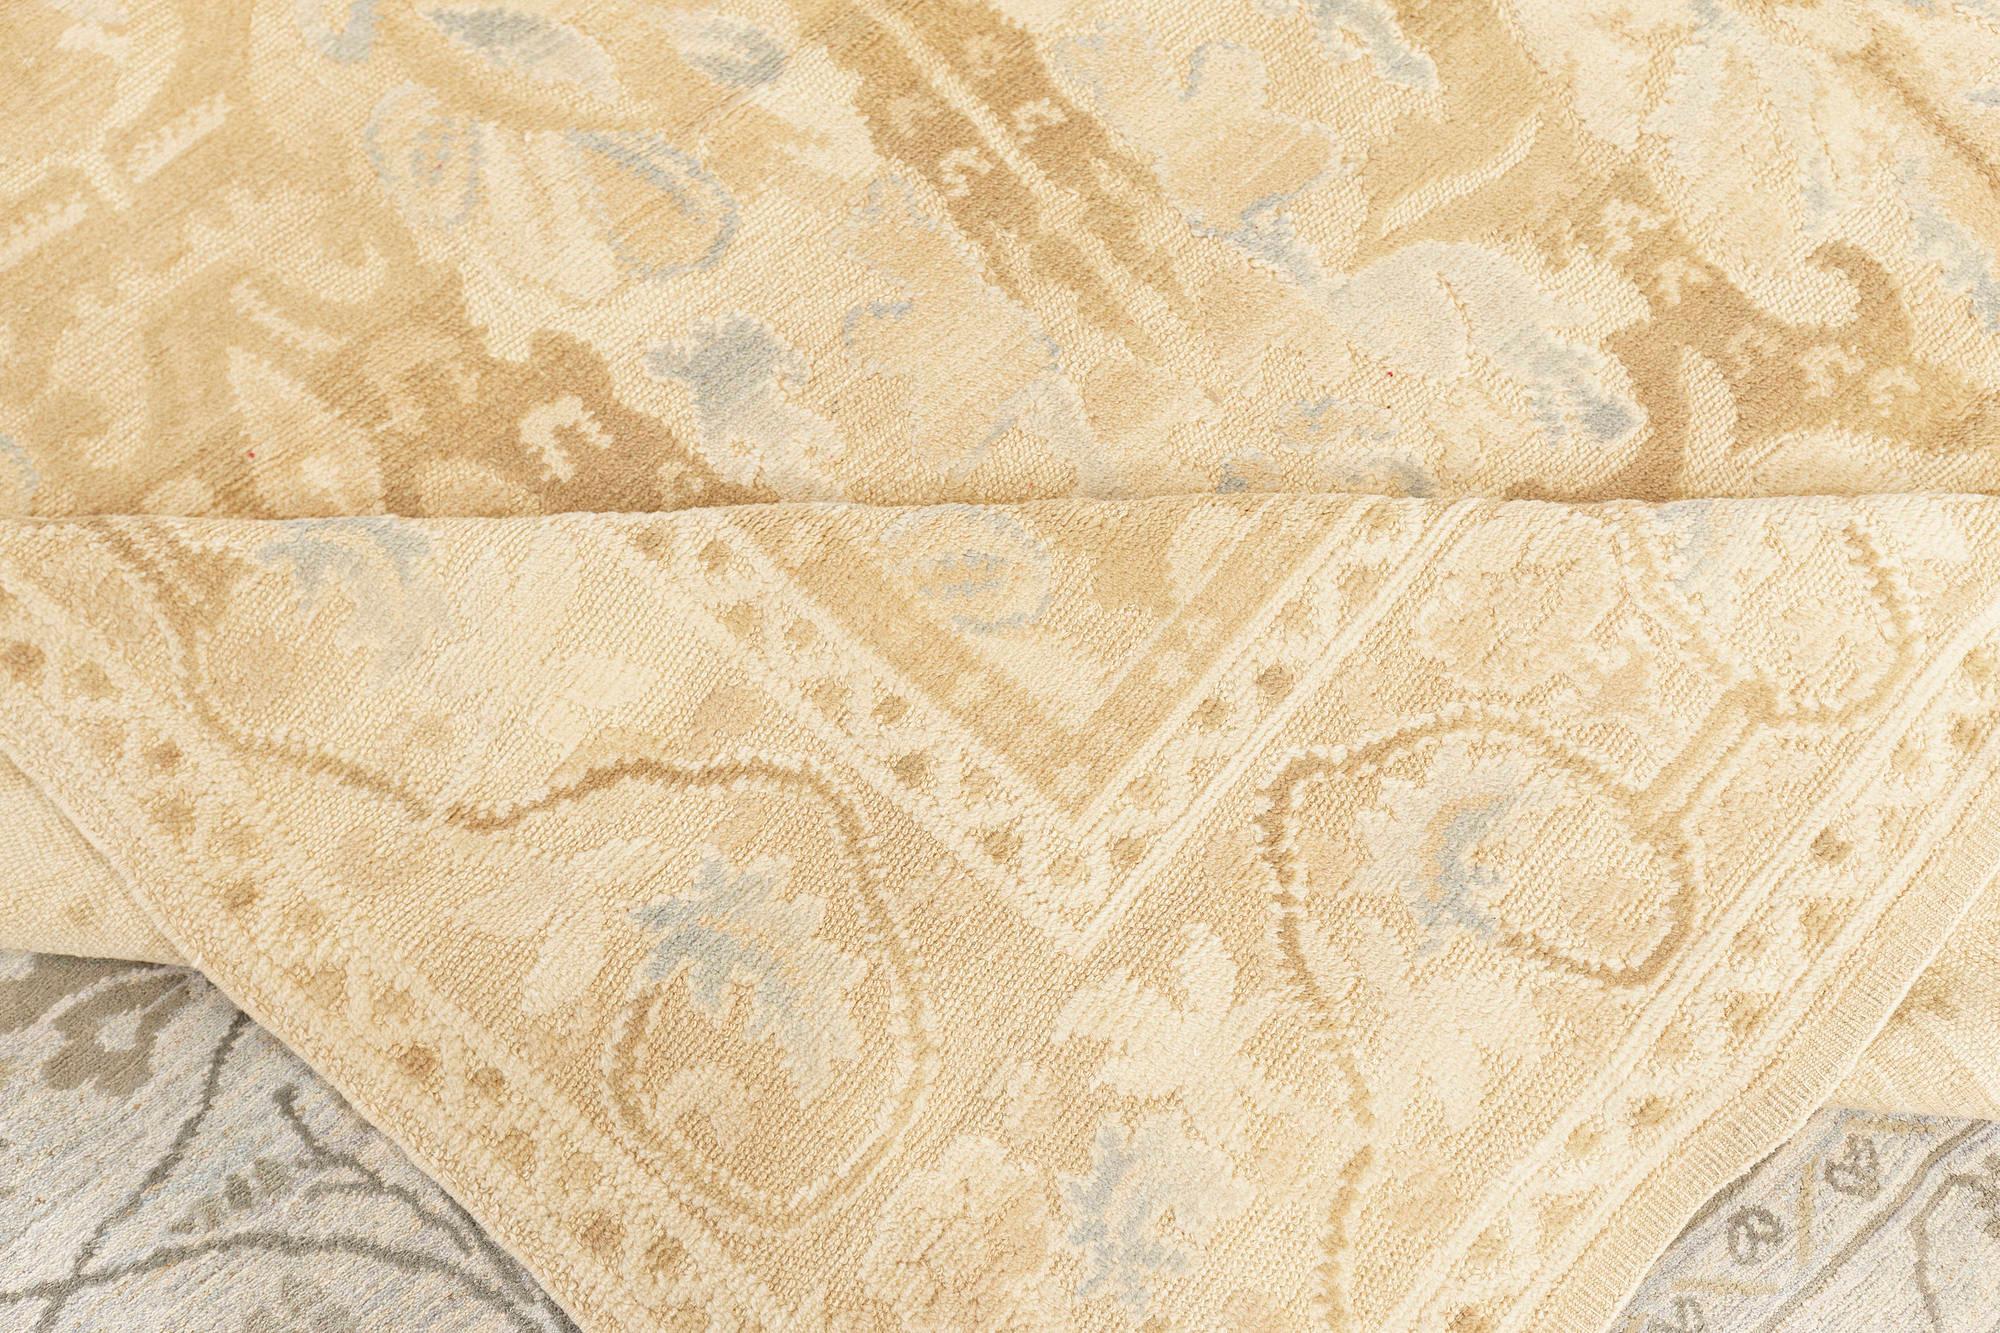 Alhambra Design beige und blau handgefertigter Wollteppich von Doris Leslie Blau.
Größe: 10'3